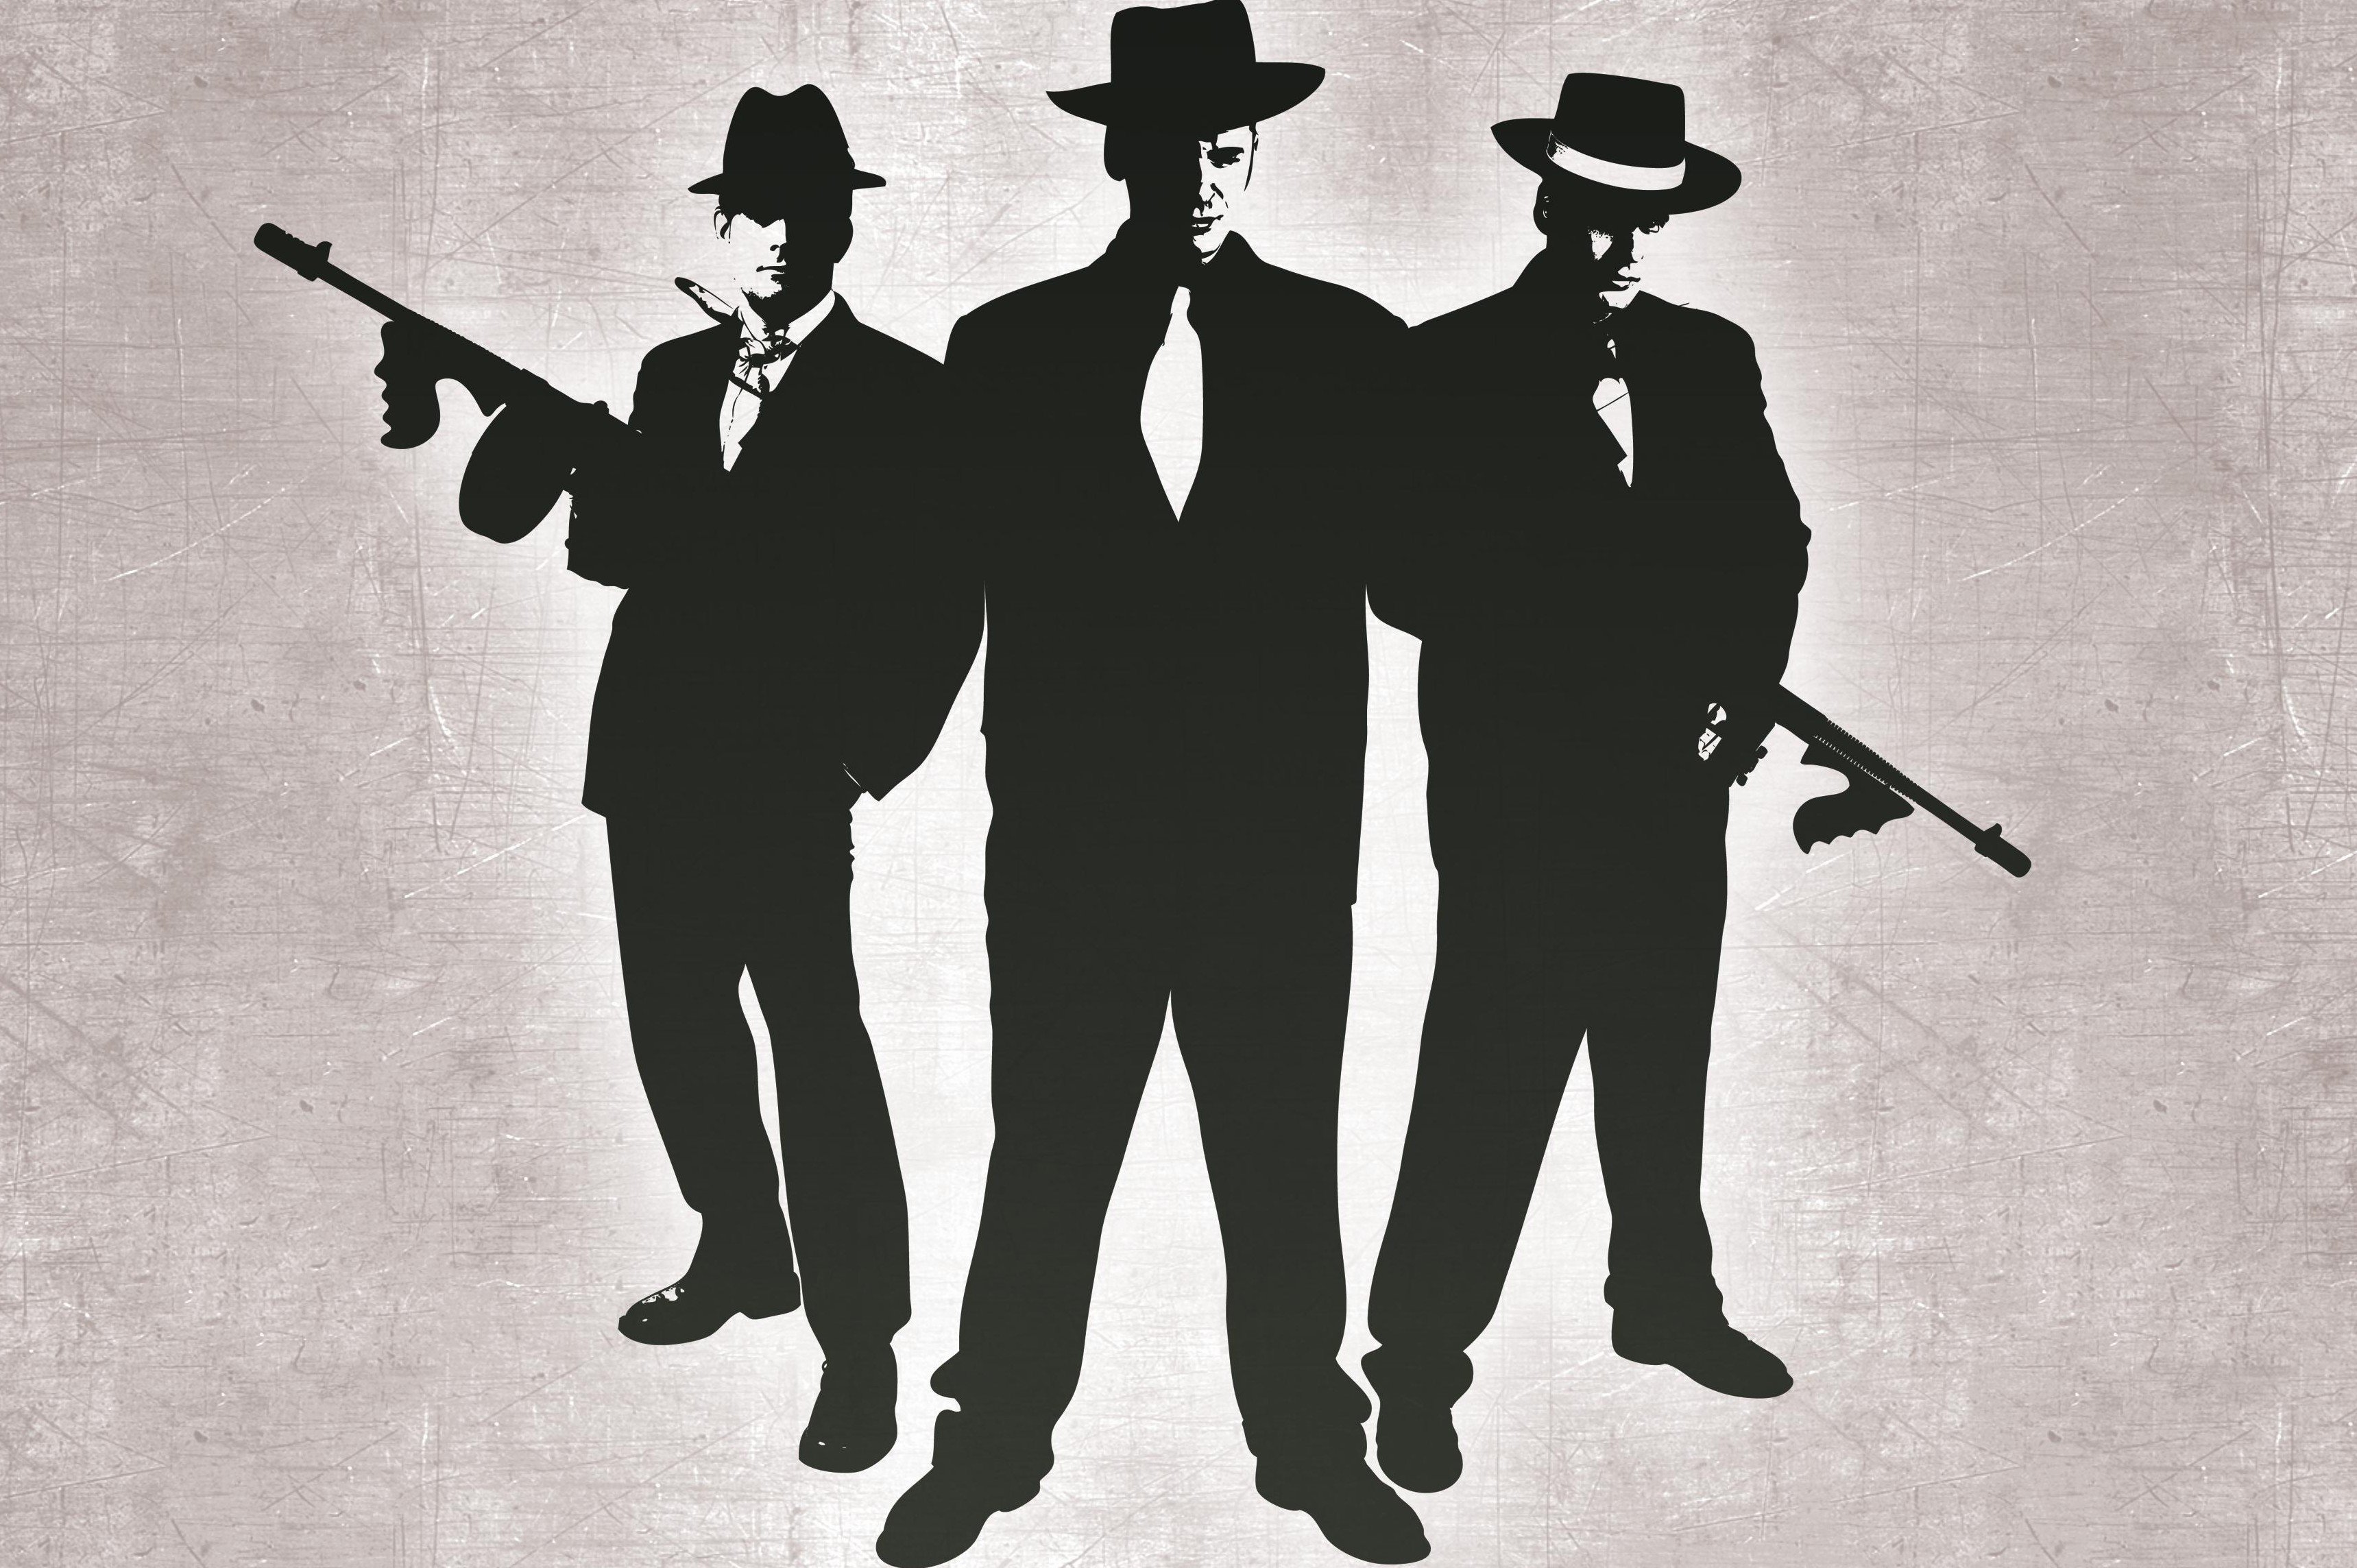 Мафия оффер. Гангстерская вечеринка Аль Капоне. Плакат в стиле гангстеров. Постеры для гангстерской вечеринки. Мафия силуэт.